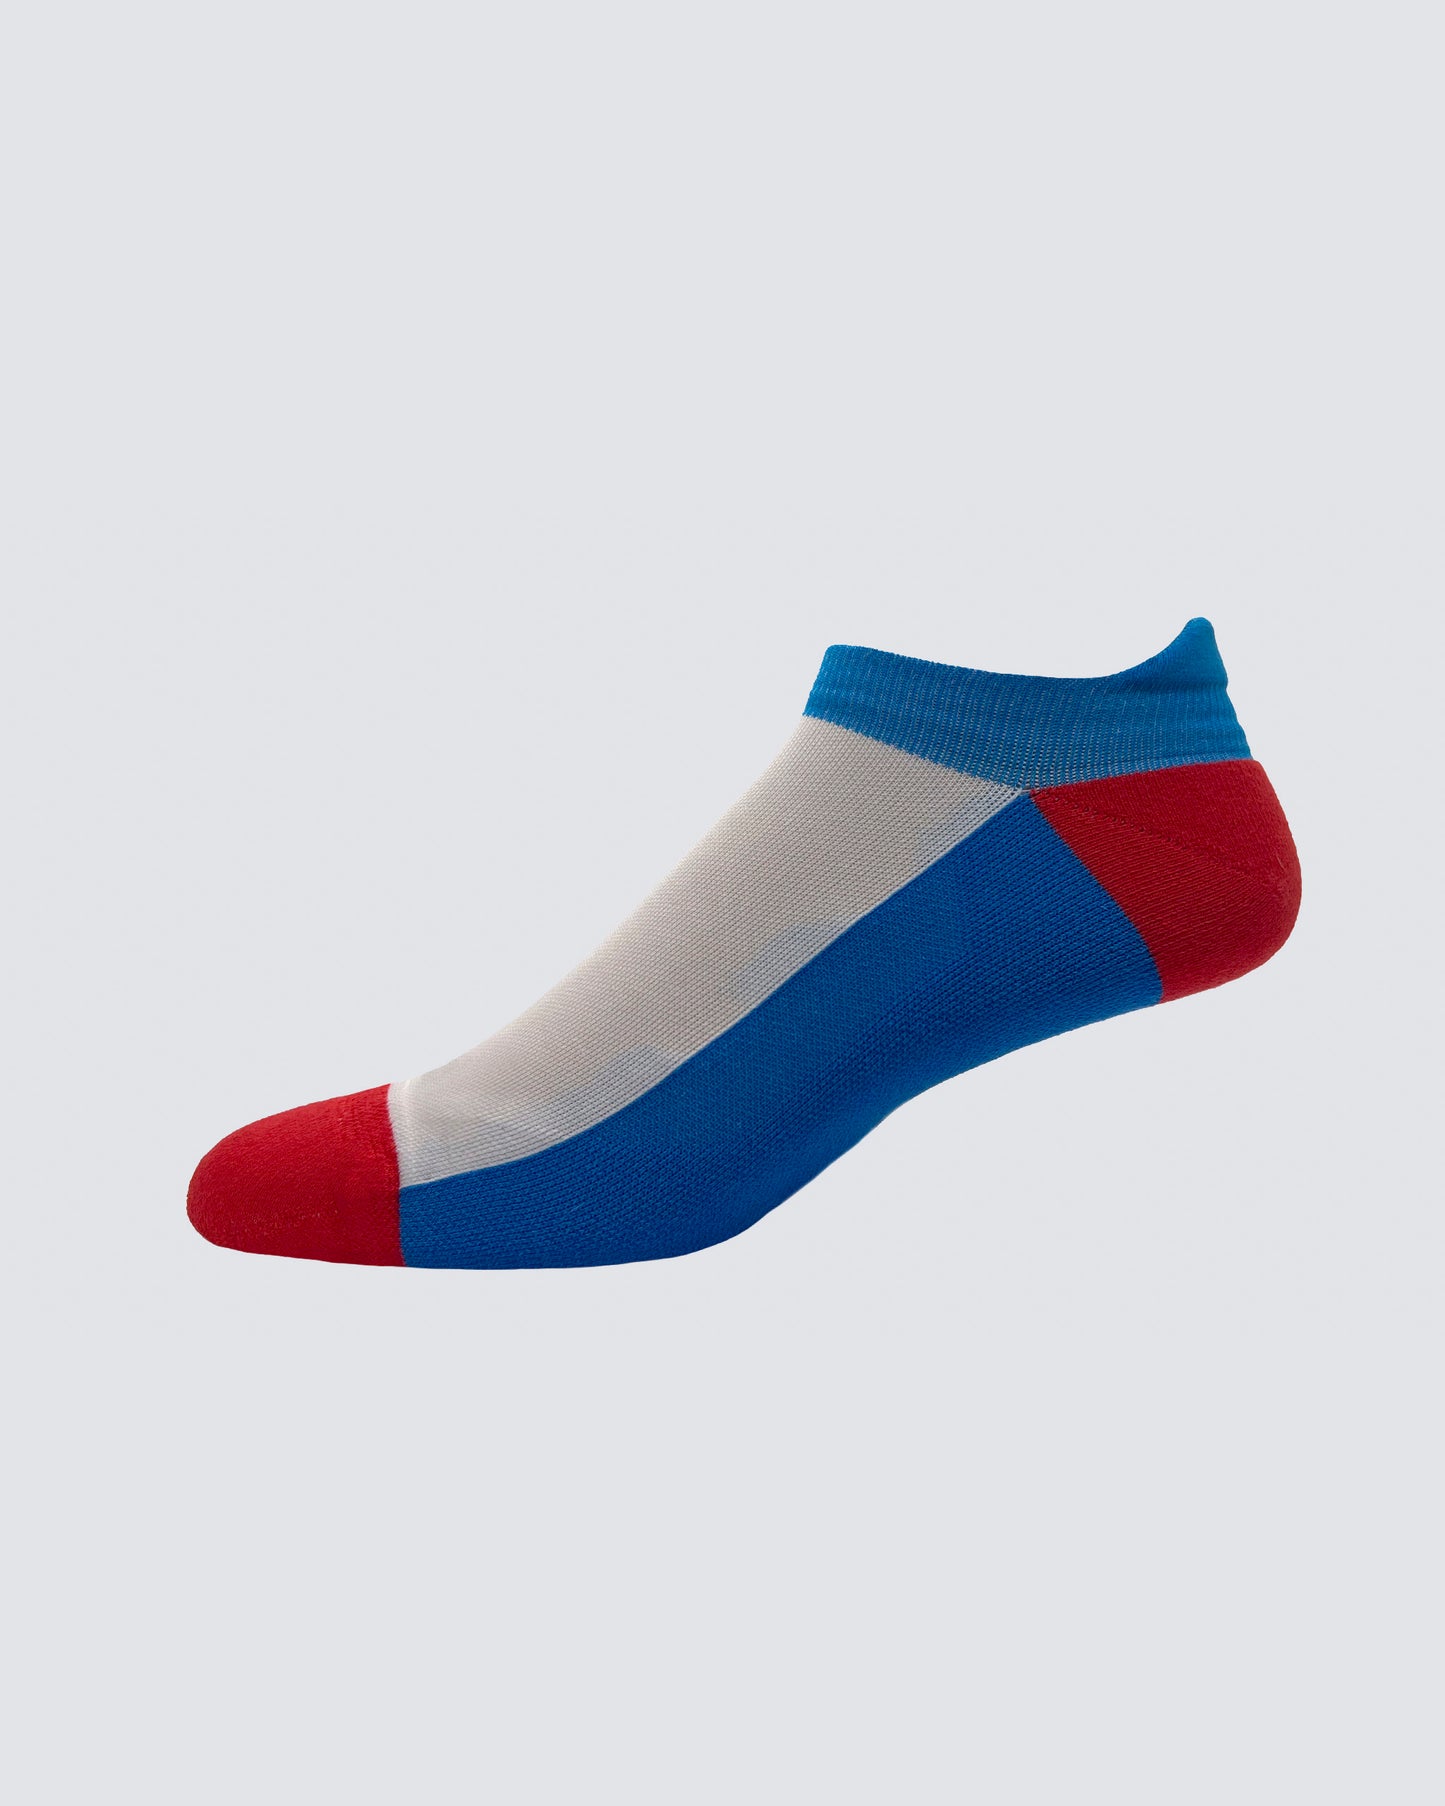 Everett Socks in White/Red